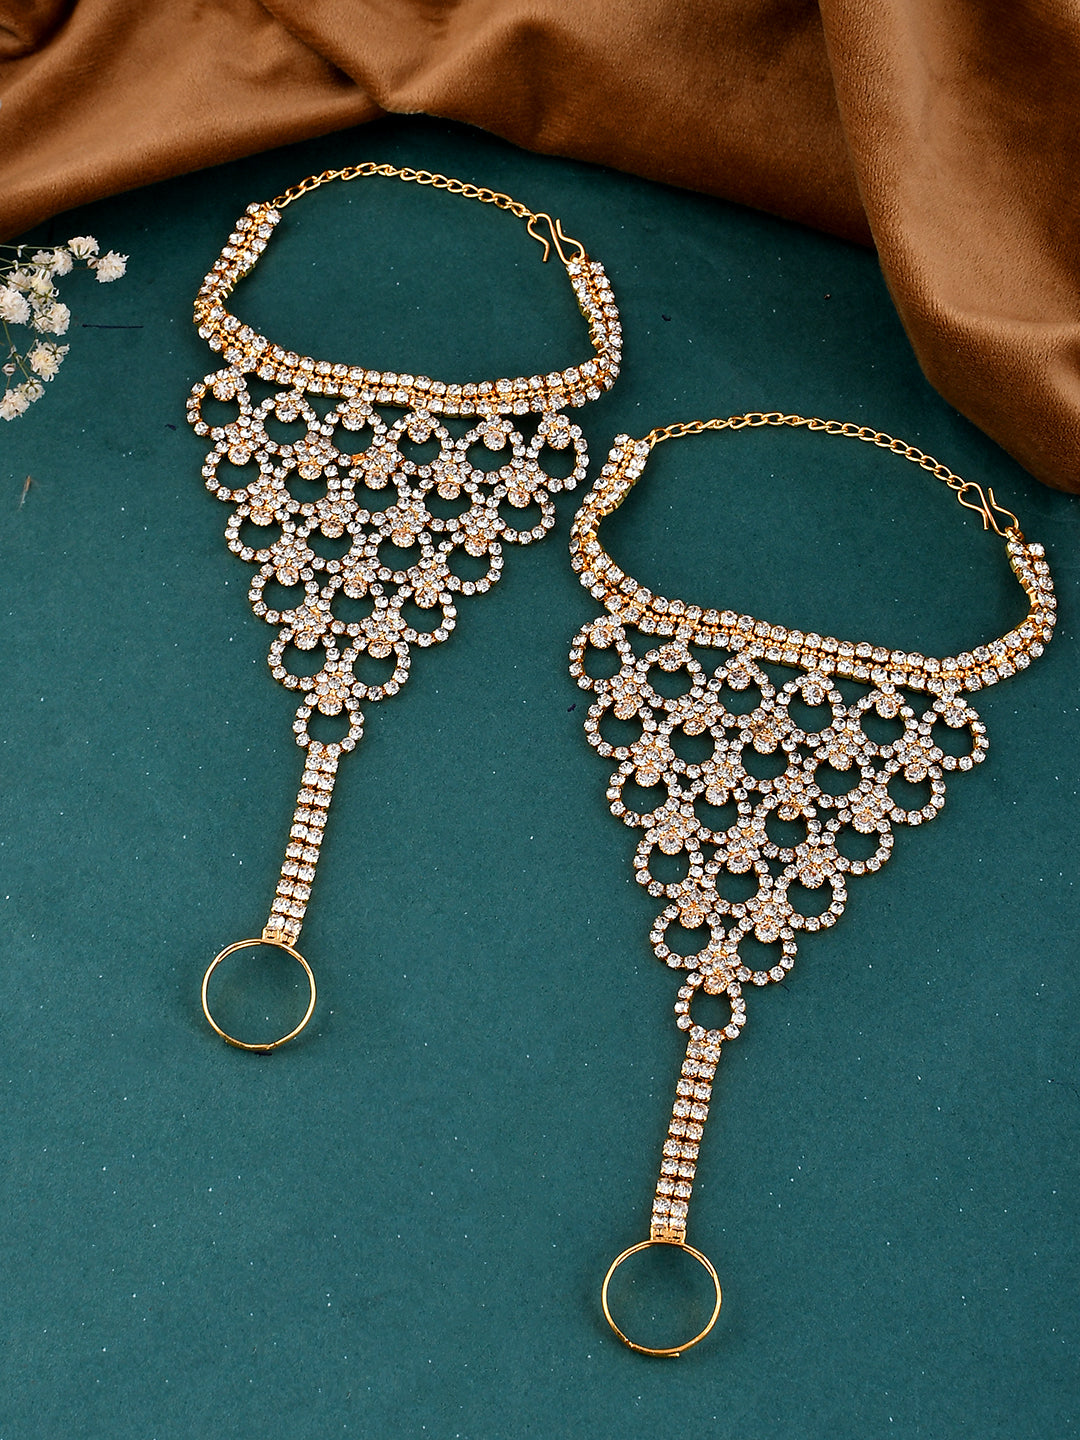 American Diamond Bridal hathphool Bracelet